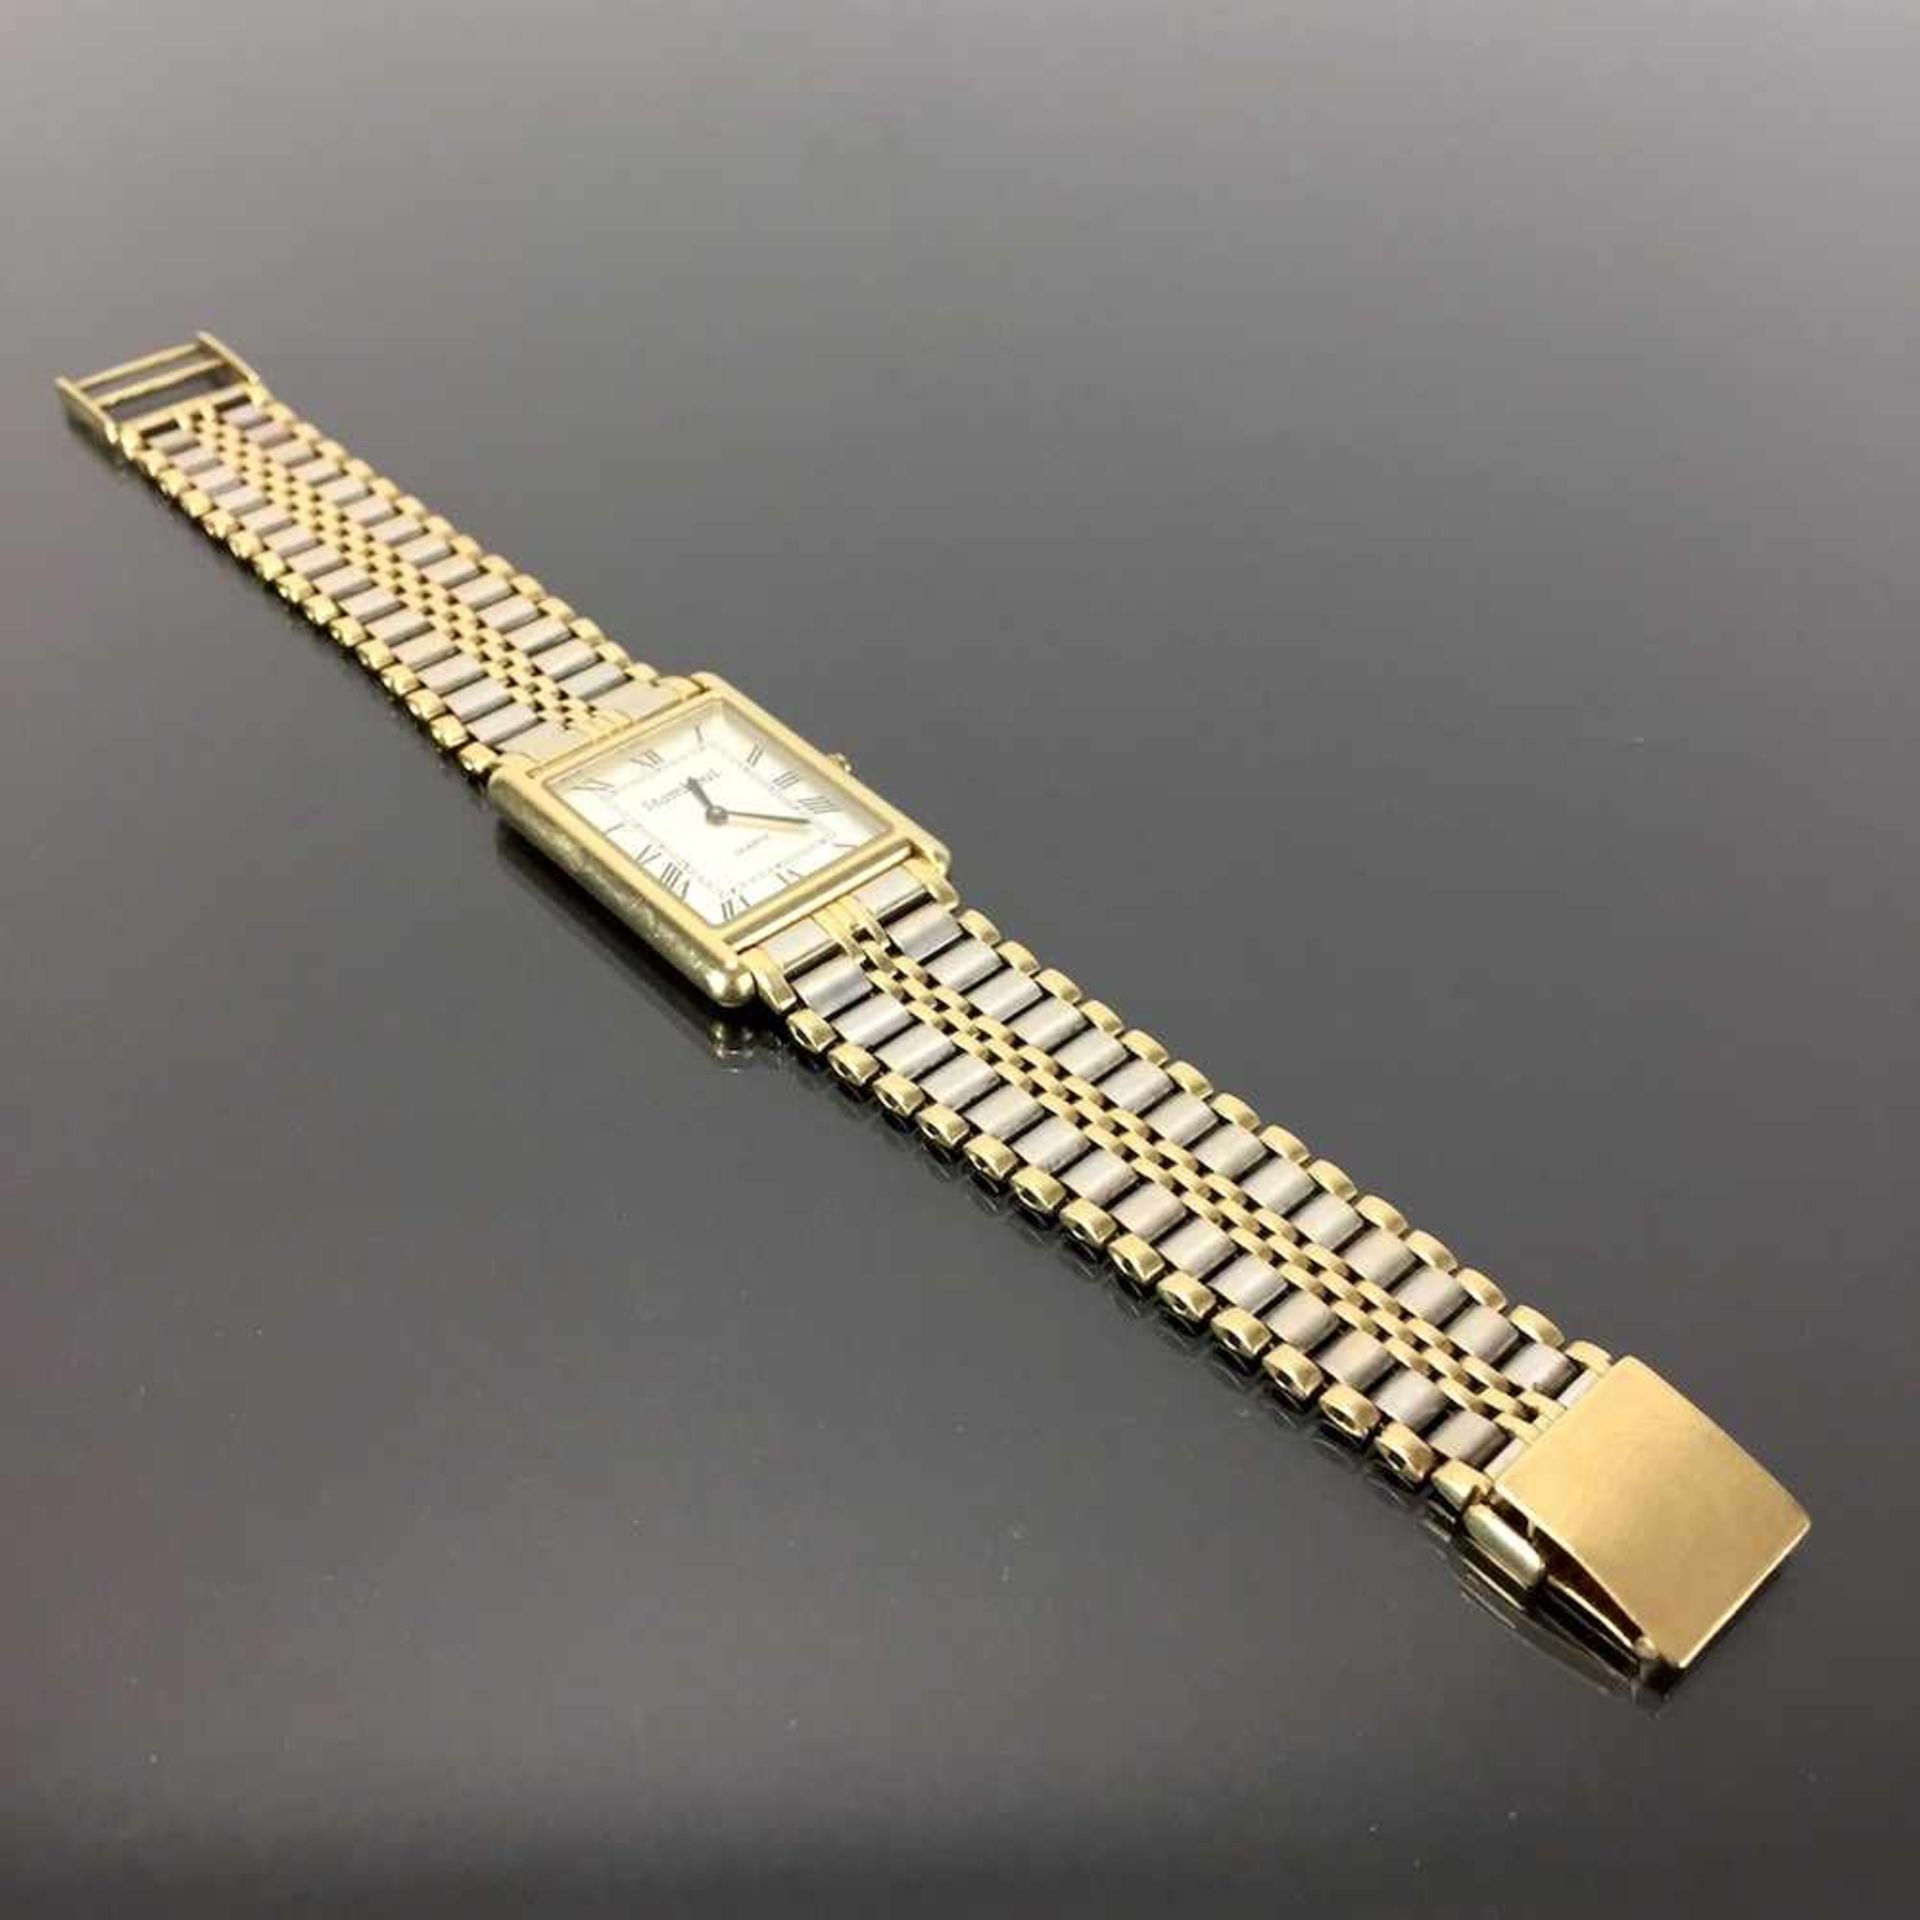 Schwere Herren Armbanduhr: Gold 585 / 14 K.Gemarkt "StambouL | Quartz". Rechteckiges Gehäuse aus - Image 4 of 4